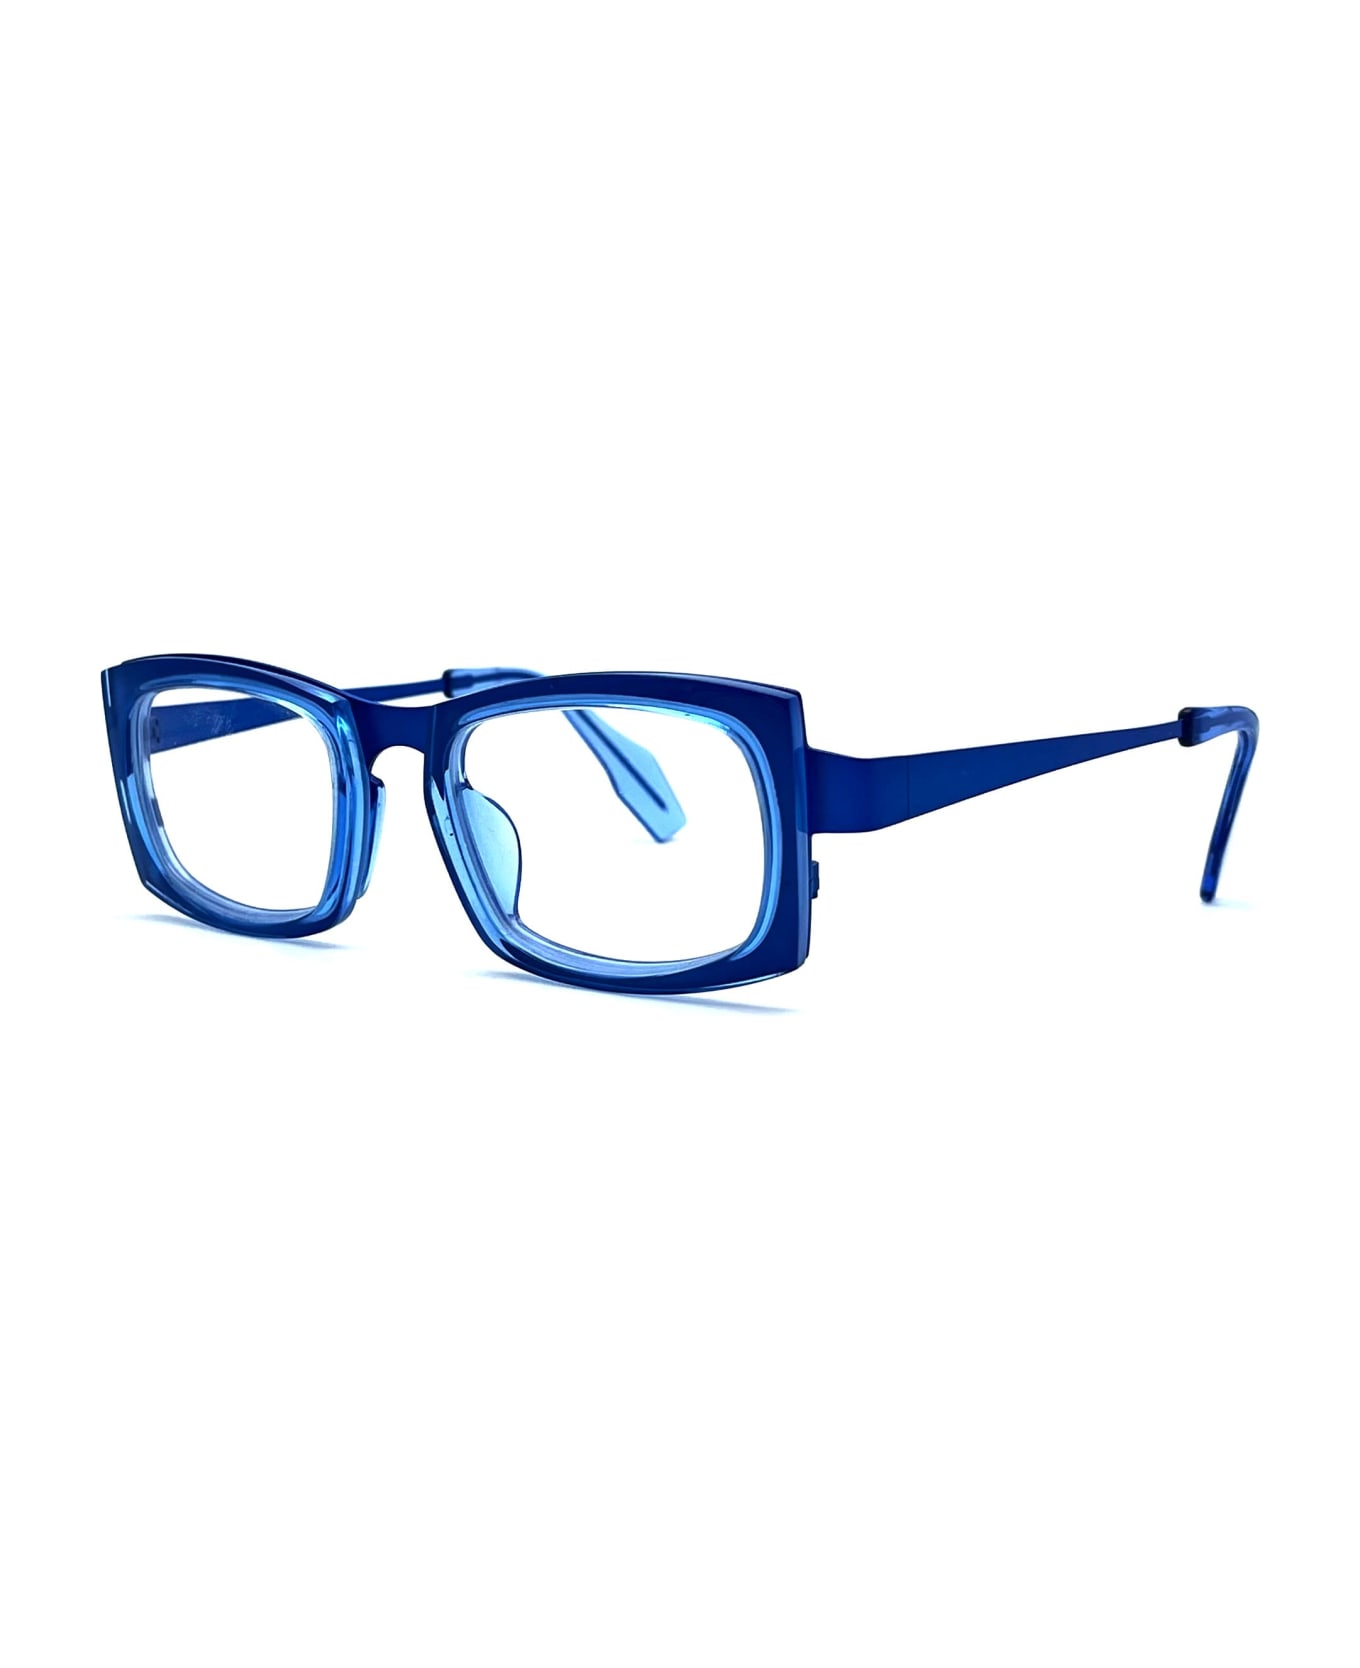 Theo Eyewear Maui - 7 Glasses - blue アイウェア